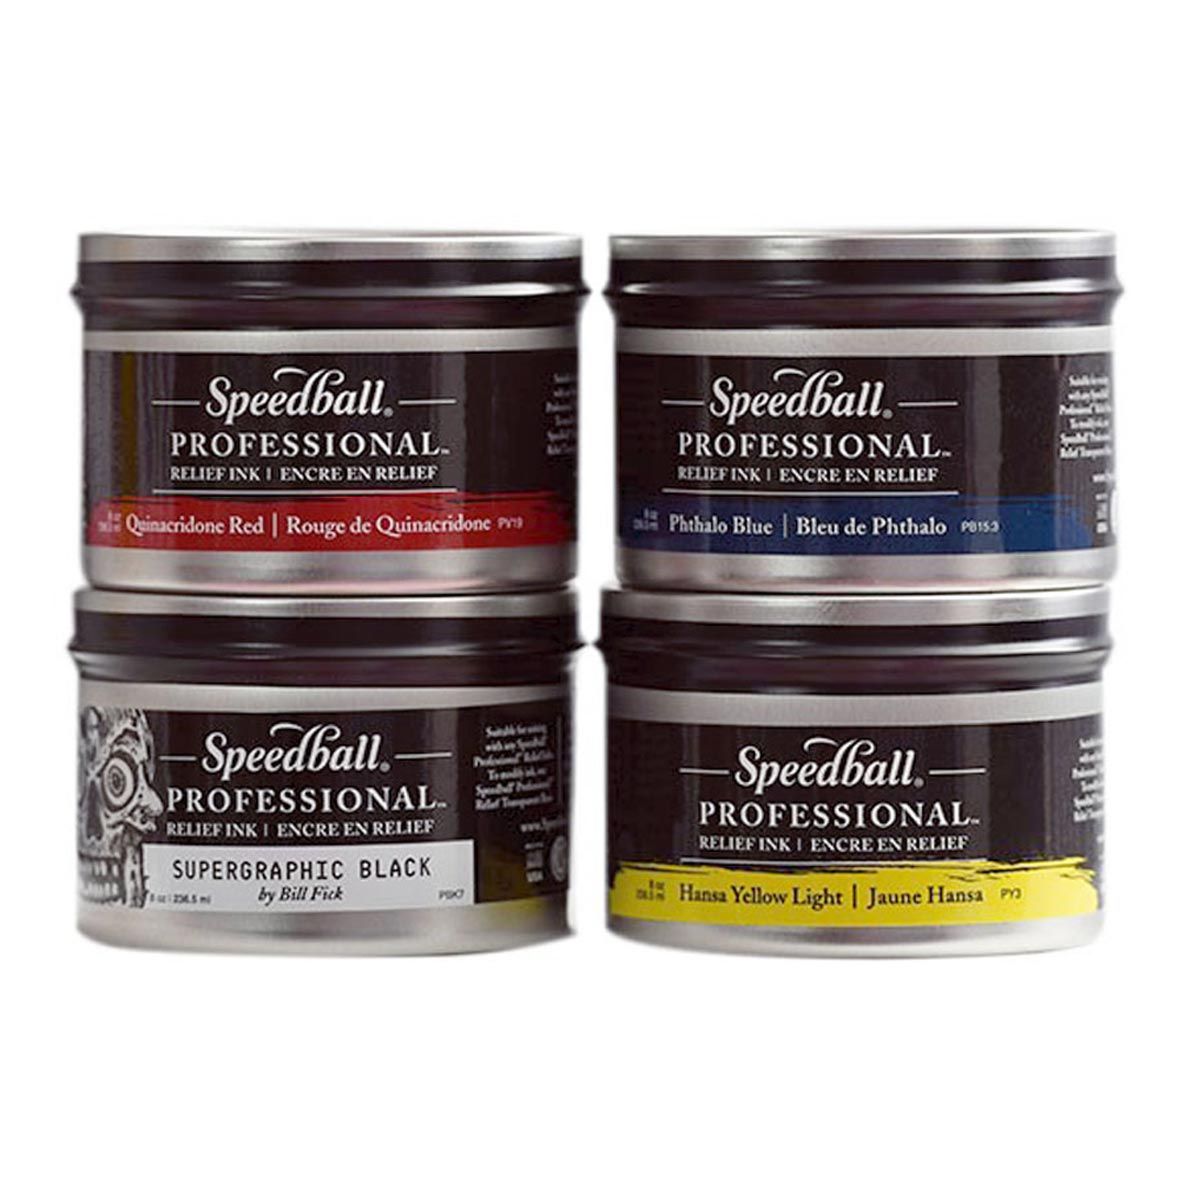 Speedball Professional Relief Ink Open Stock